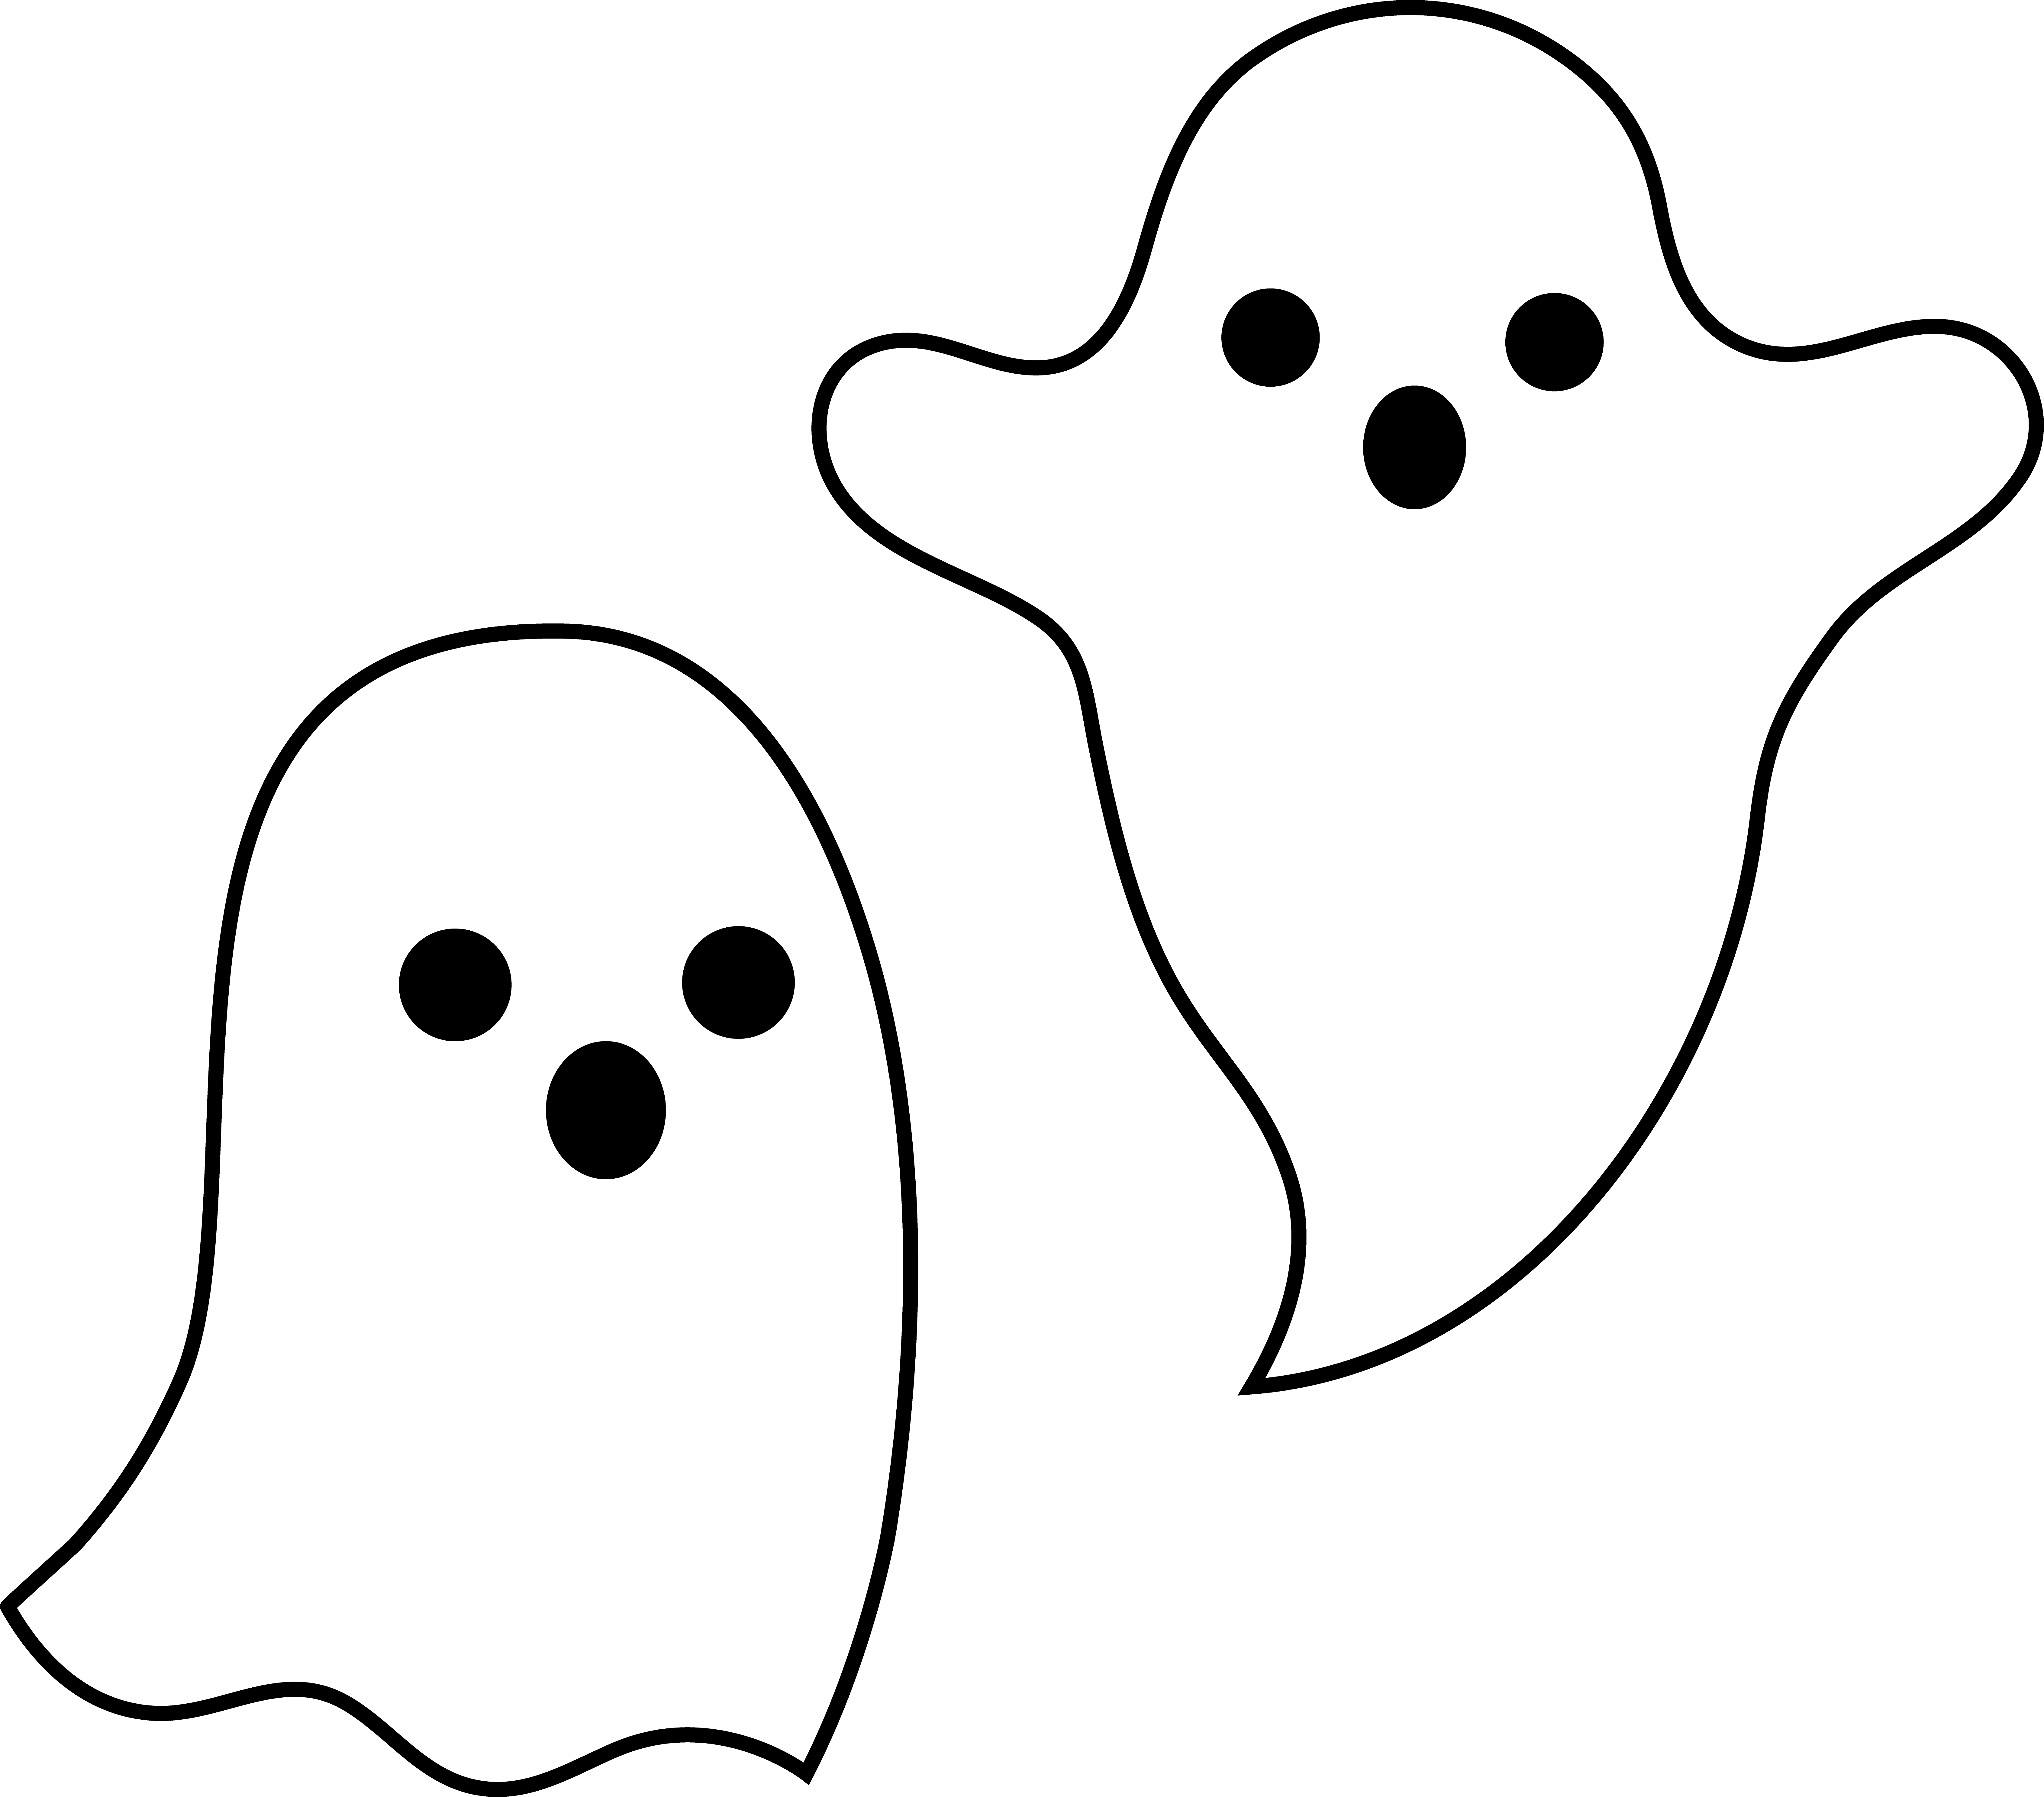 Image Transparente de Ghost Halloween